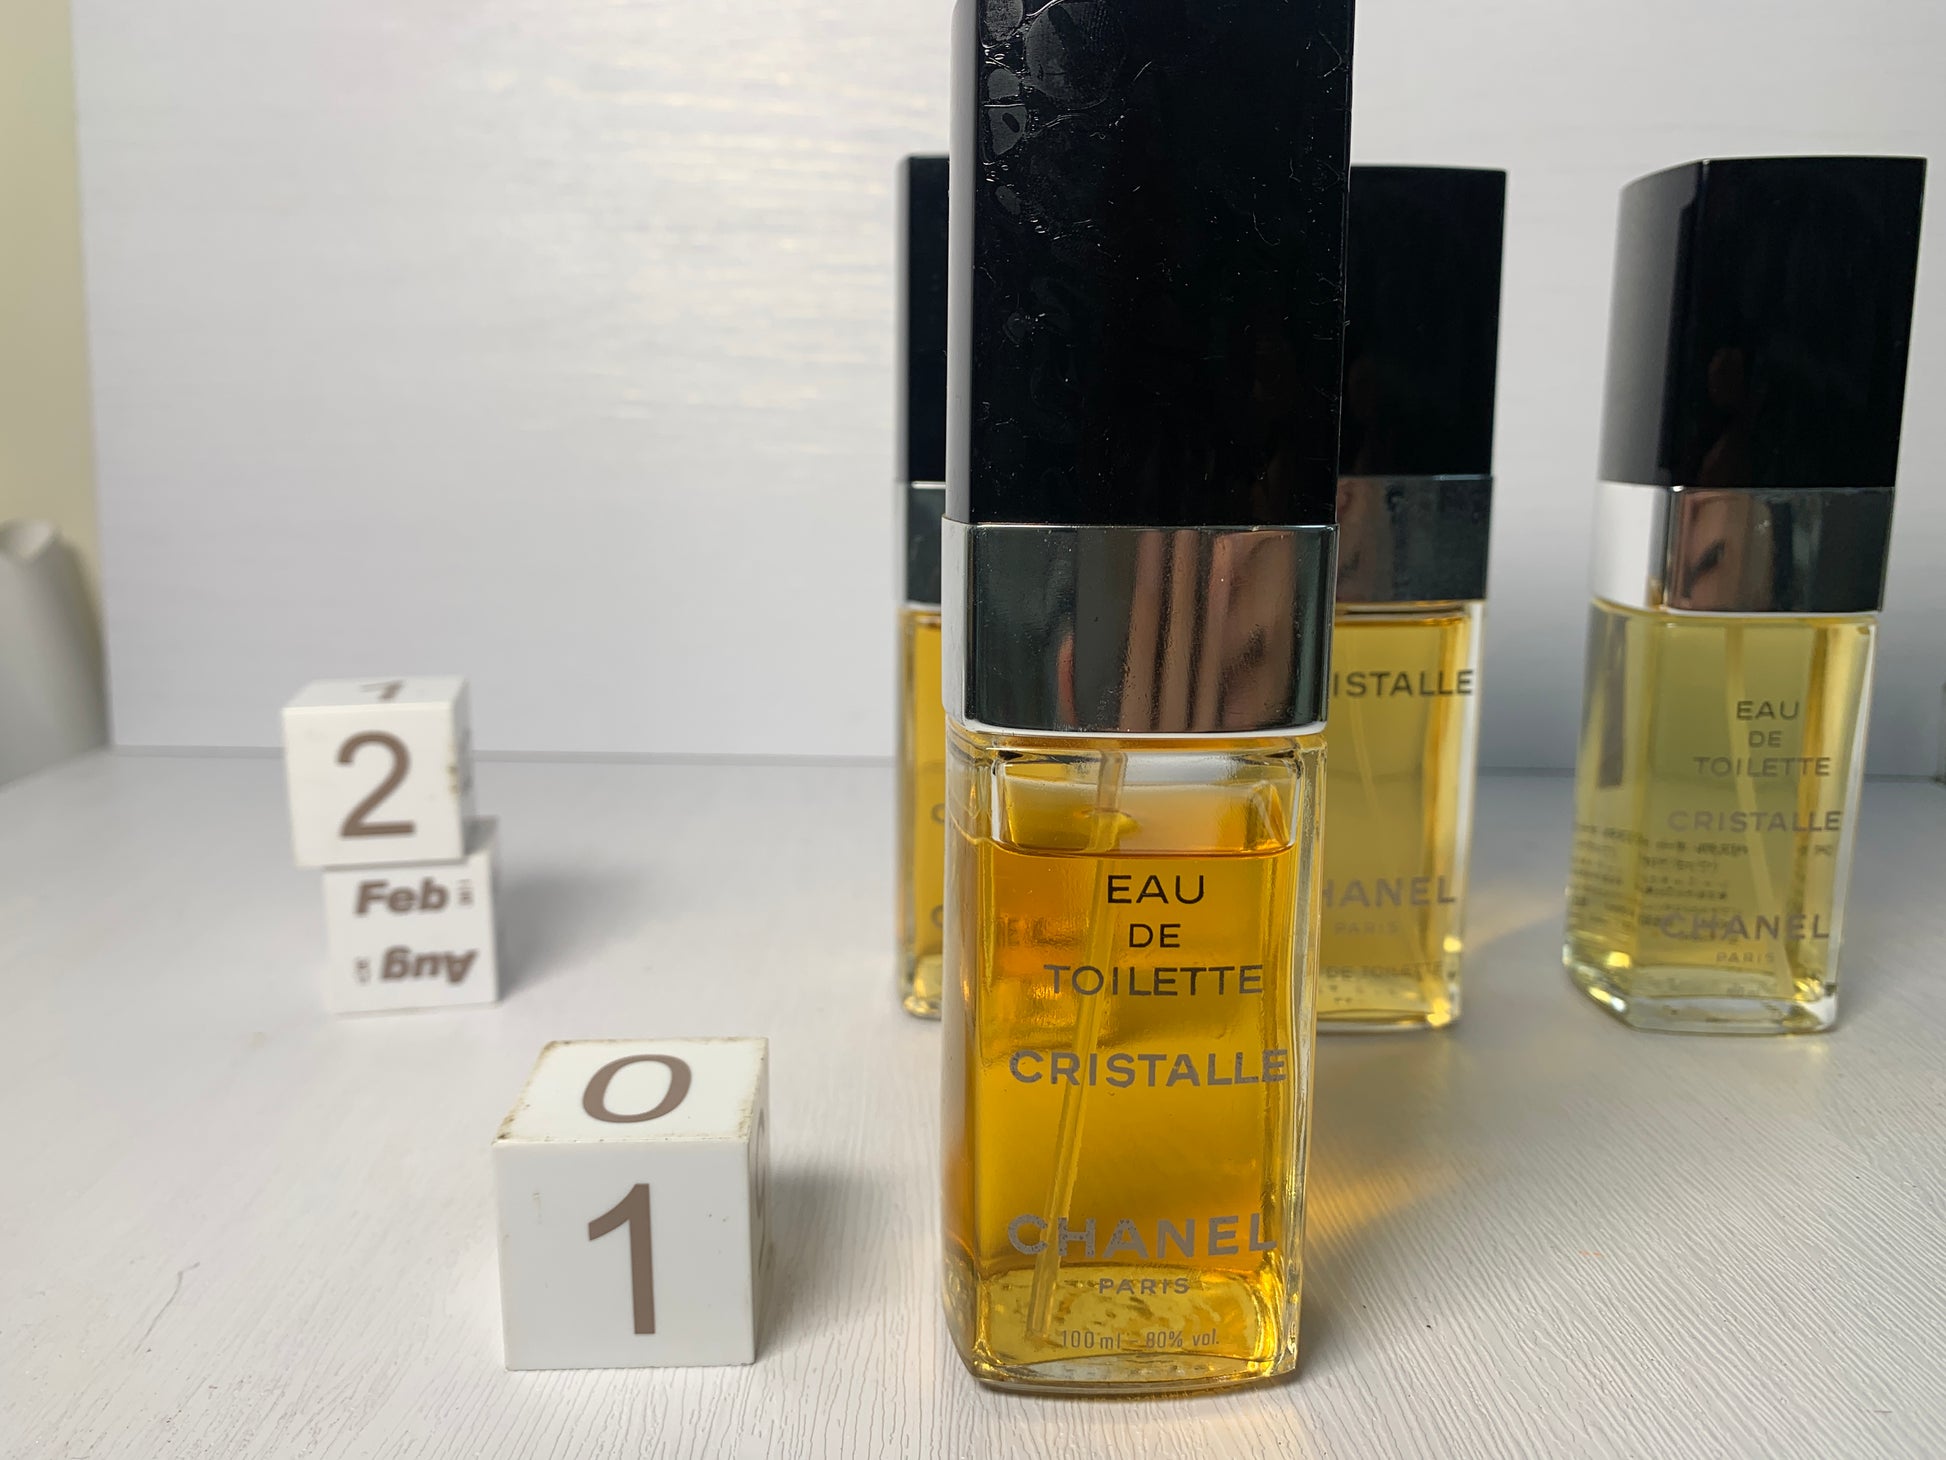 CHANEL Cristalle Eau de Parfum for Women for sale